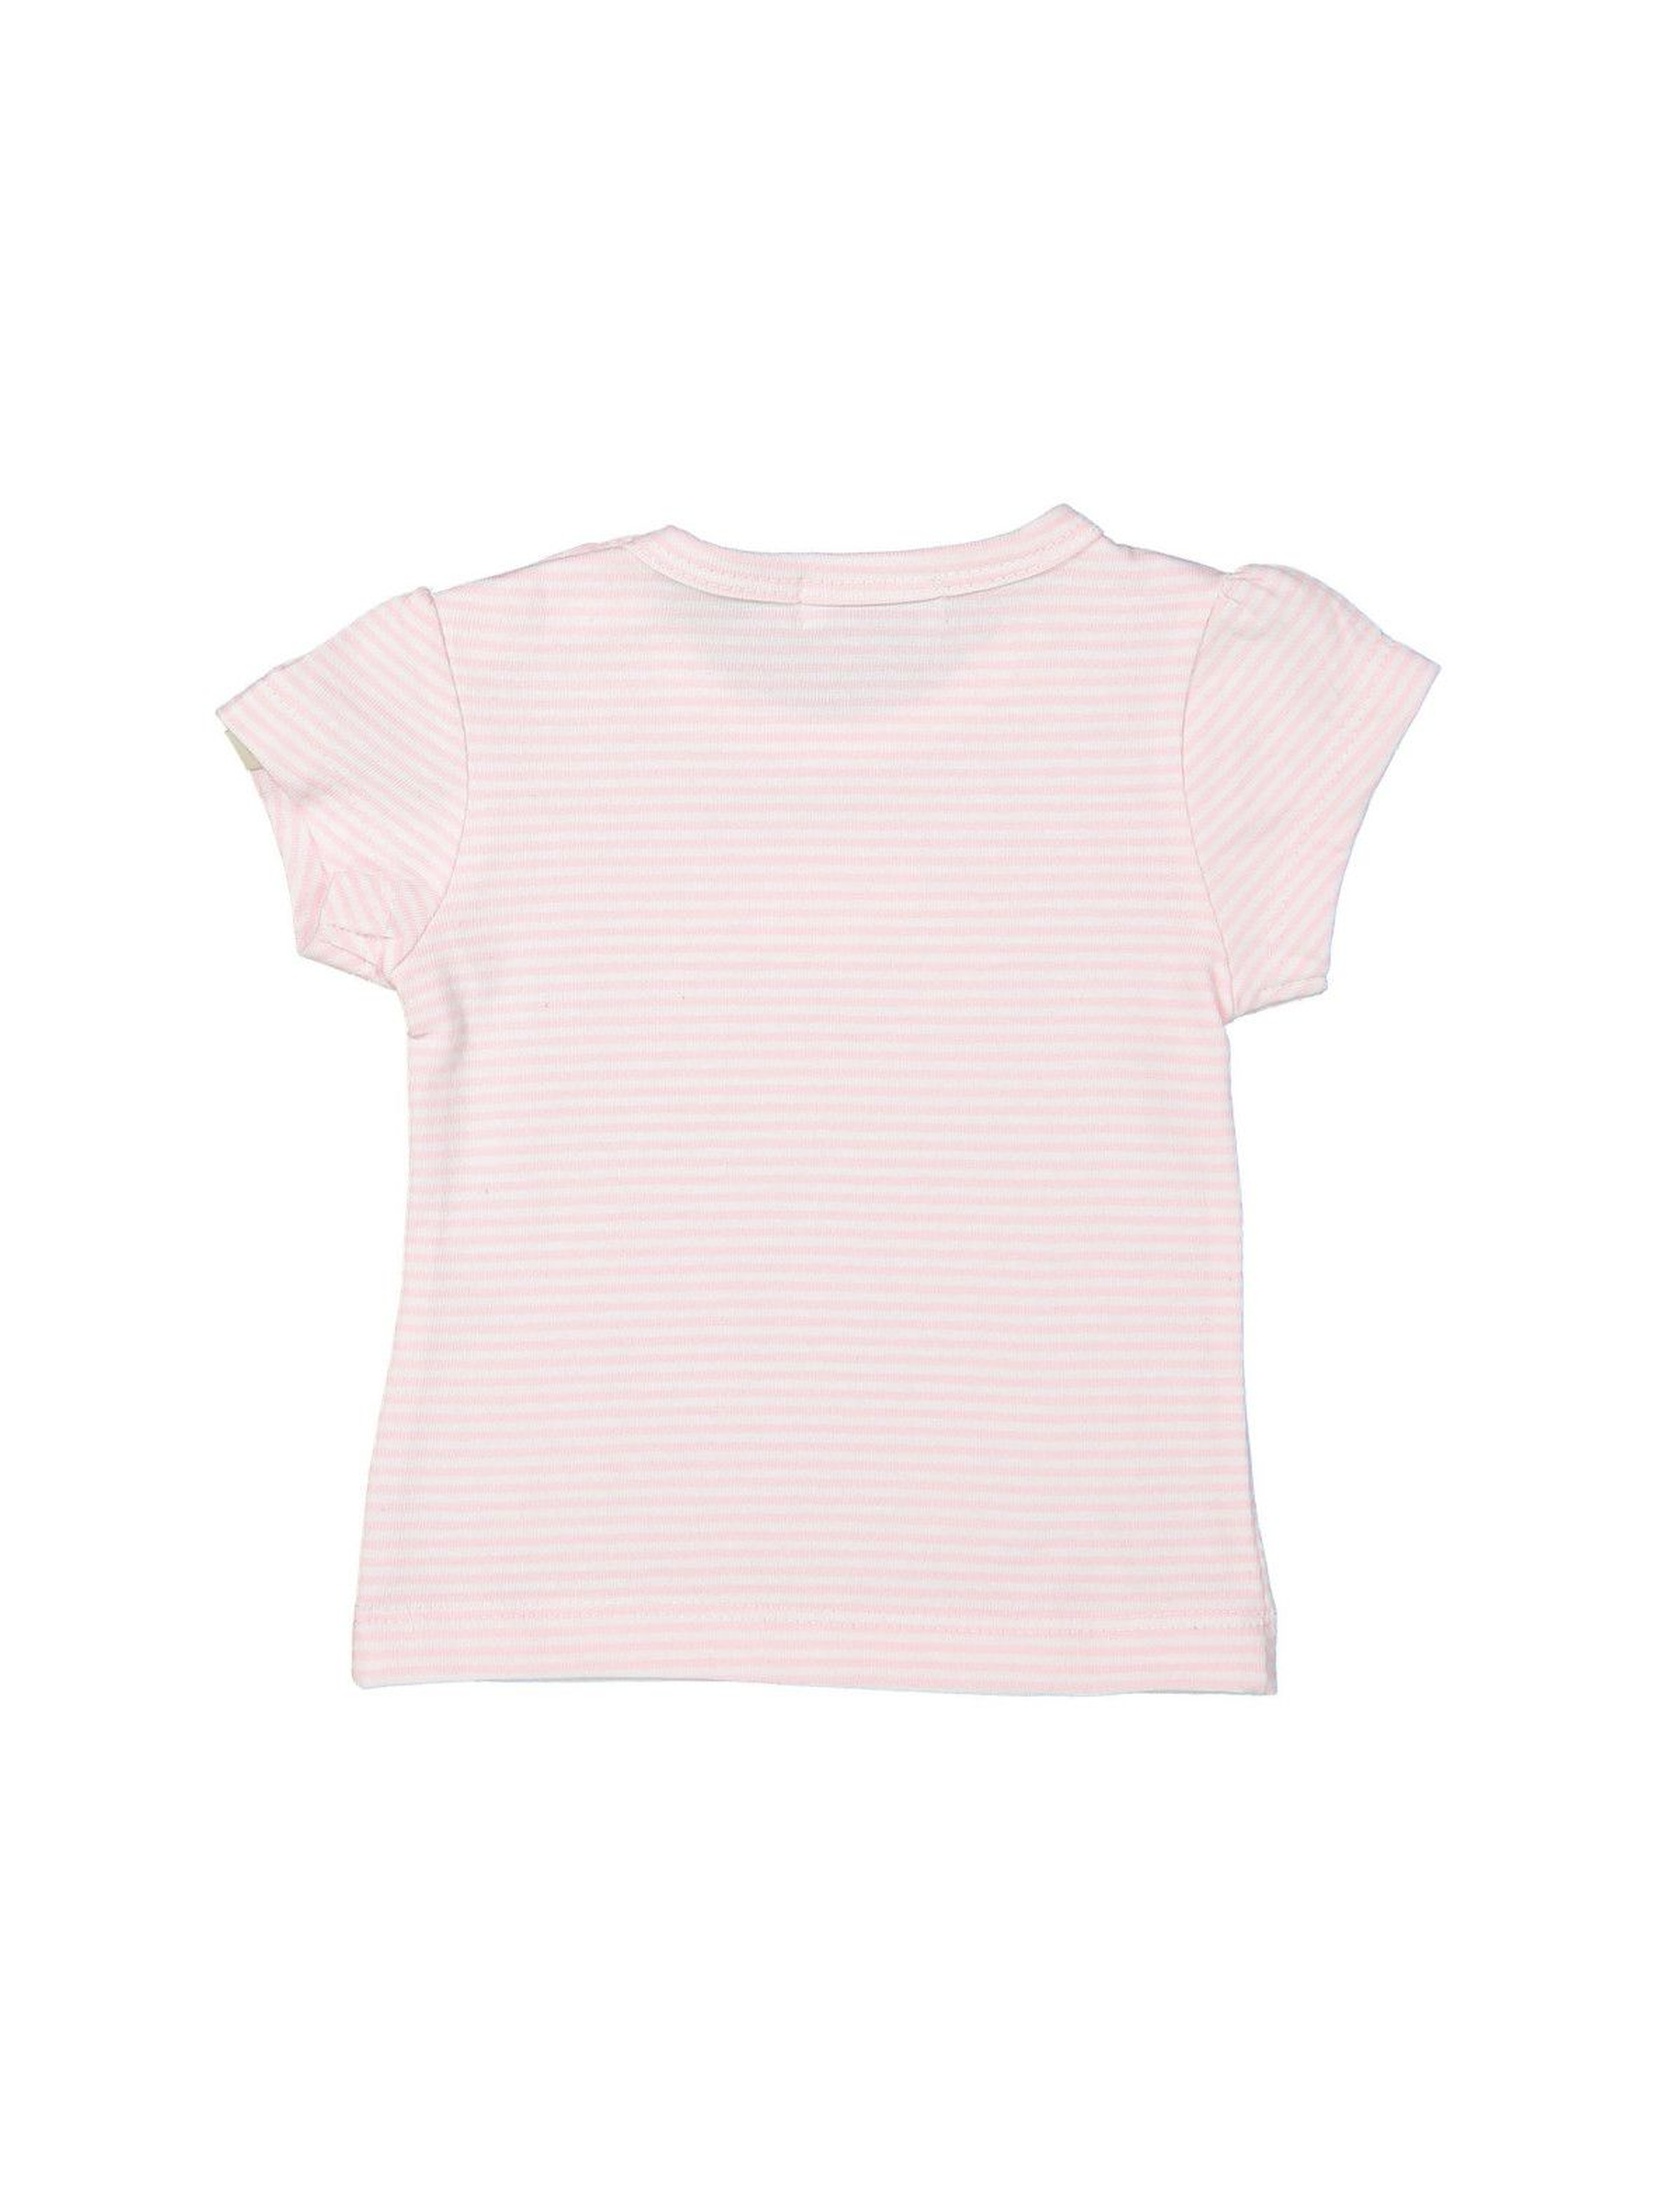 T-shirt niemowlęcy w różowo-białe paski